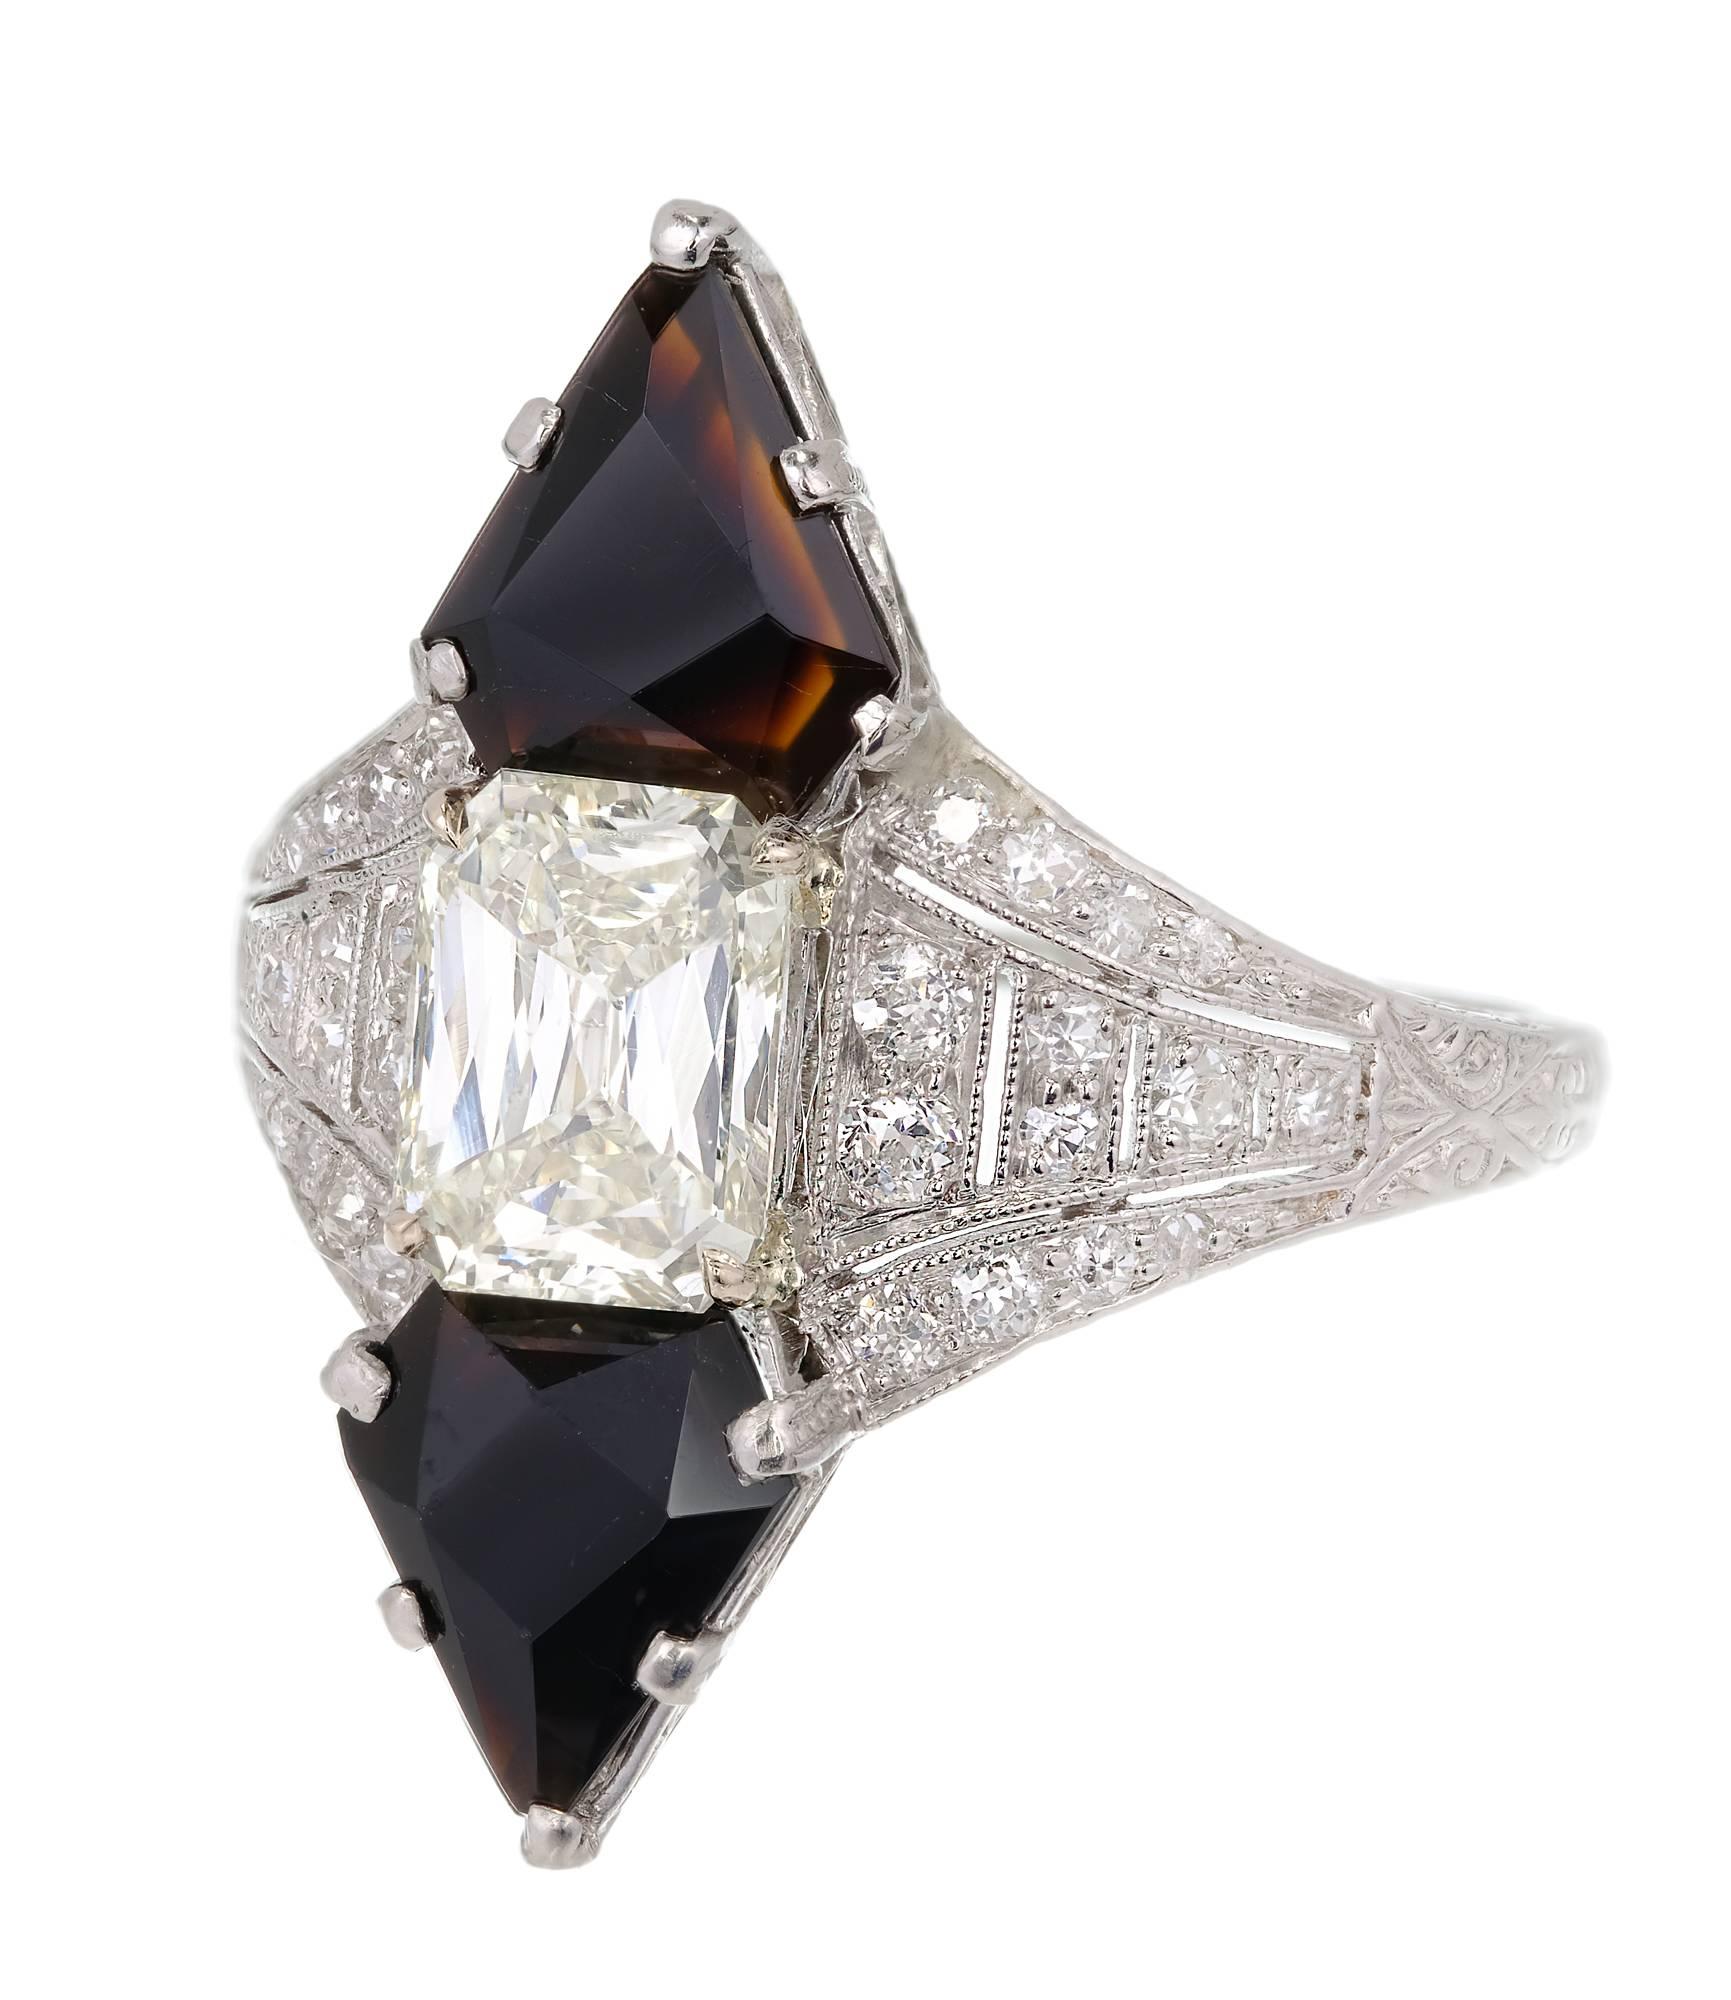 Art Deco Black Star & Frost Kalibrierter schwarzer Onyx und Smaragd mit Stufenschliff in einer Platinfassung mit Akzentdiamanten. 

1 Smaragd-Diamant im Stufenschliff, Gesamtgewicht ca. 1,03cts, M - N, SI1, EGL-Zertifikat # US312362301D
28 runde